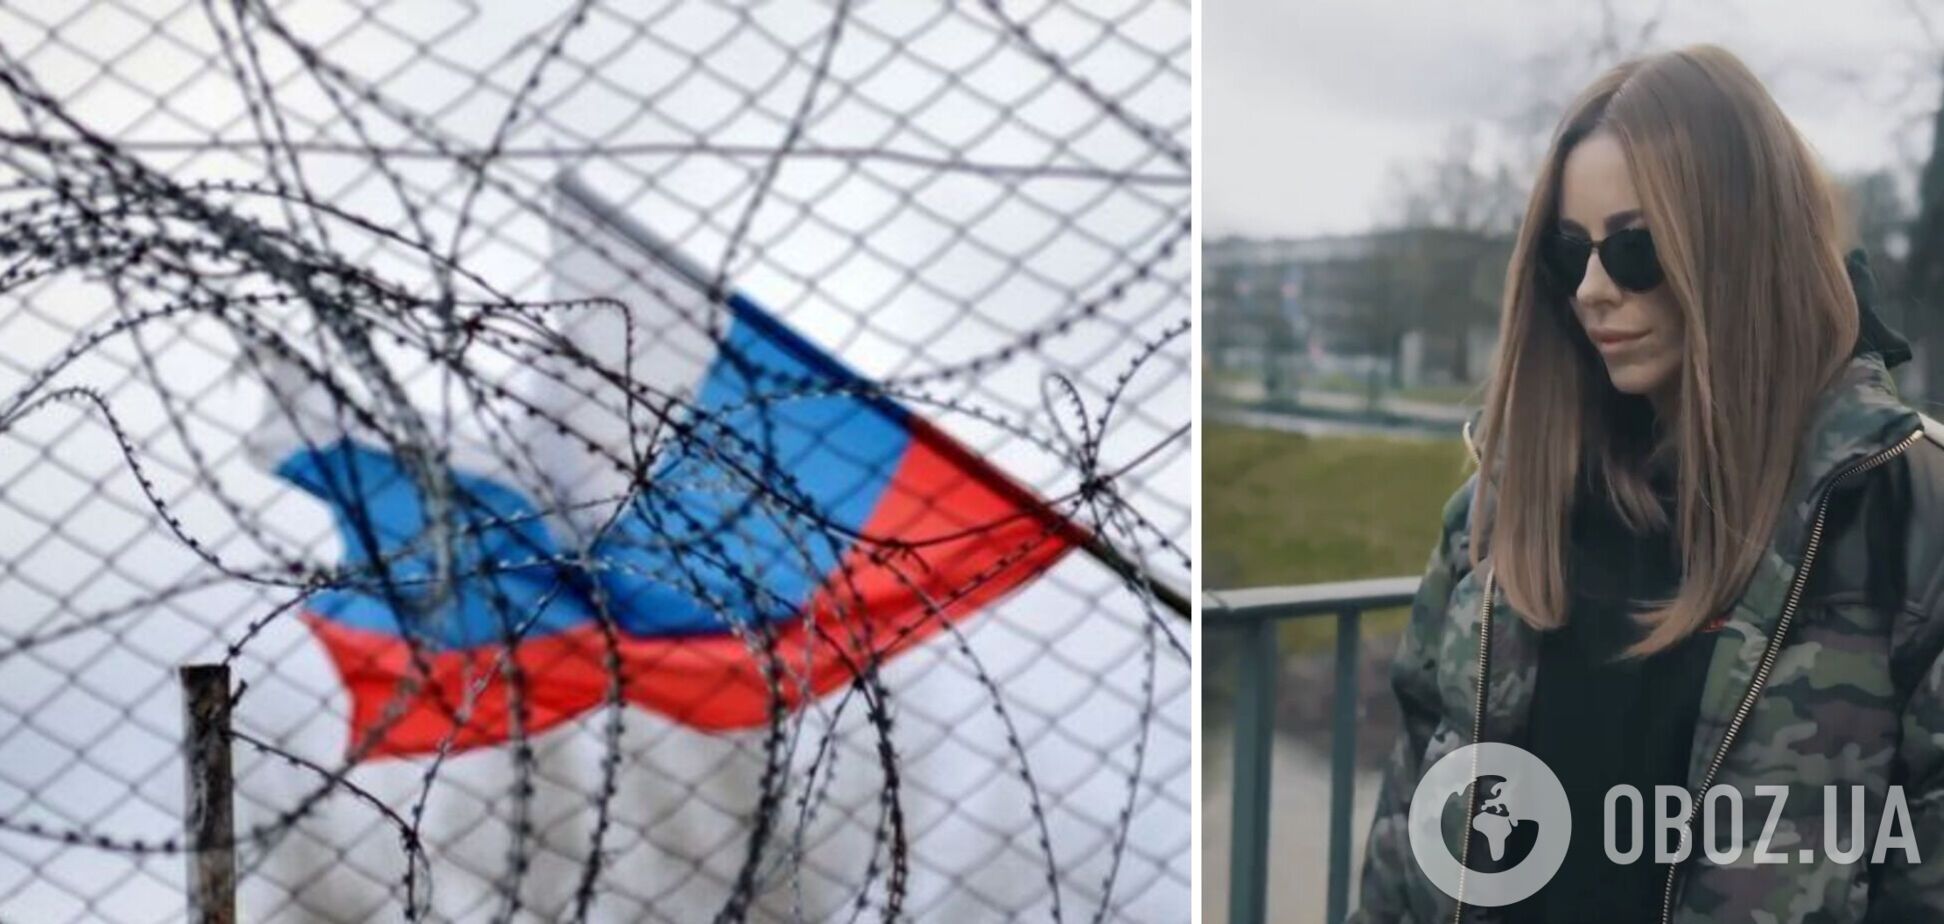 'Ані Лорак душею з Росією!' Пропагандисти несподівано заступилися за українку і назвали її 'жертвою політичного режиму'